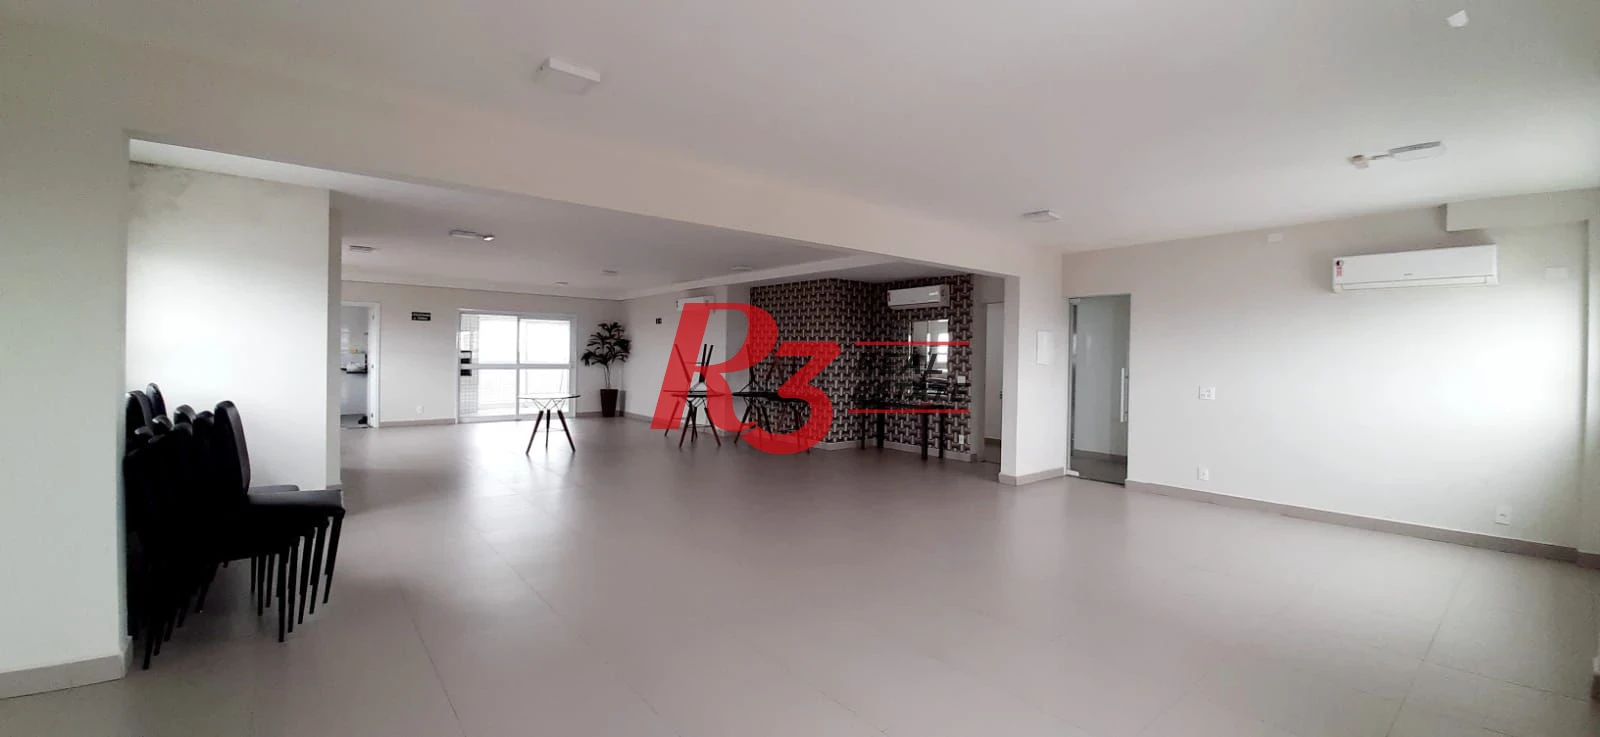 Apartamento à venda, 75 m² por R$ 720.000,00 - Embaré - Santos/SP